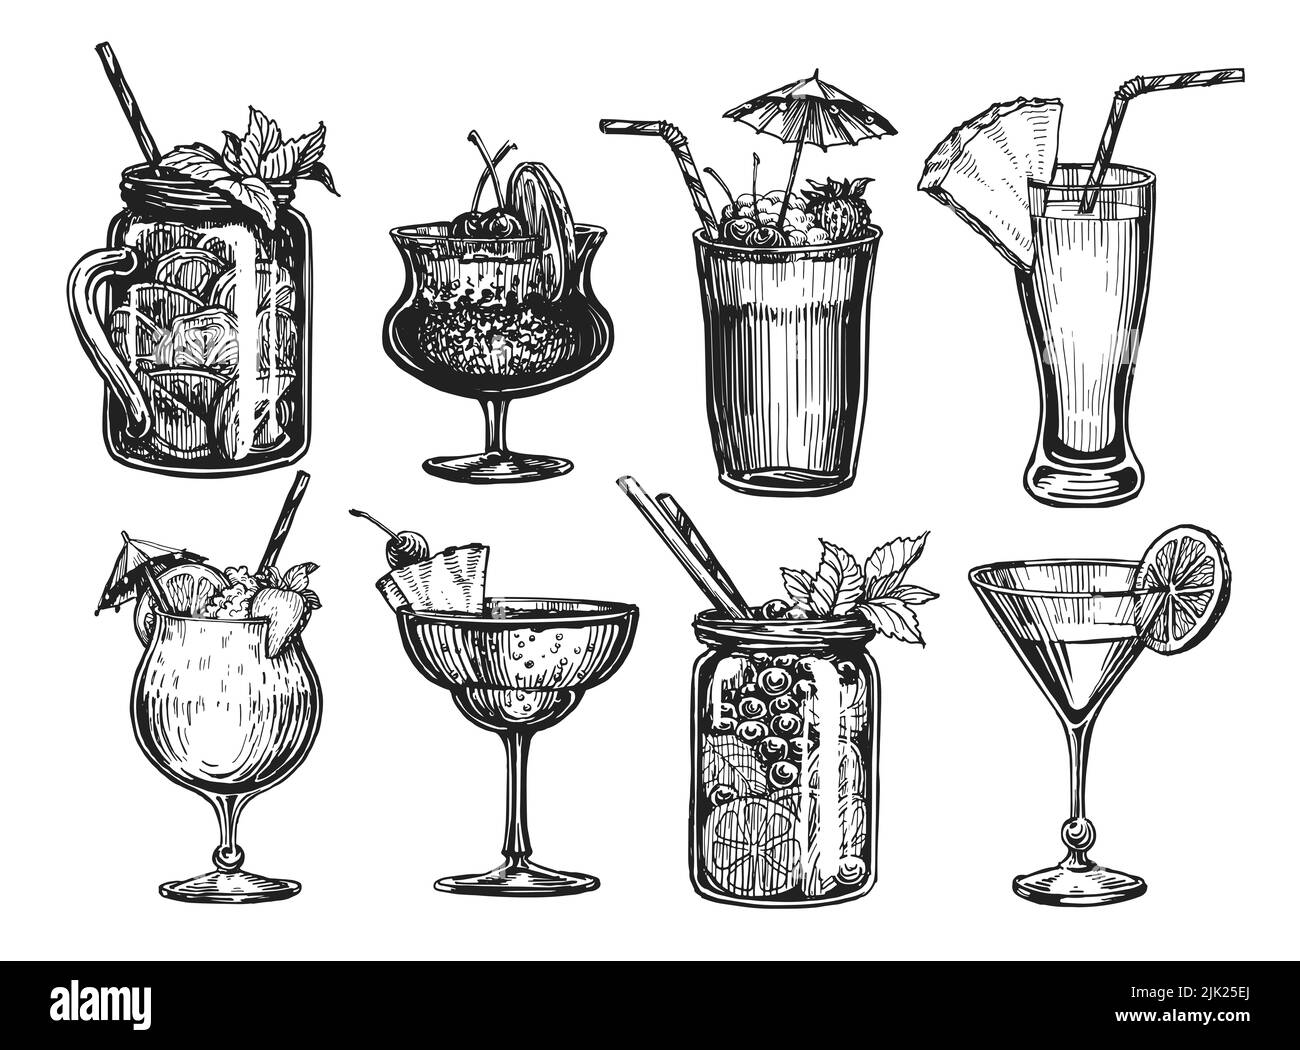 Cócteles elaborados a mano aislados sobre blanco. Zumo, bebidas alcohólicas en vasos. Ilustración del menú del restaurante o cafetería Foto de stock